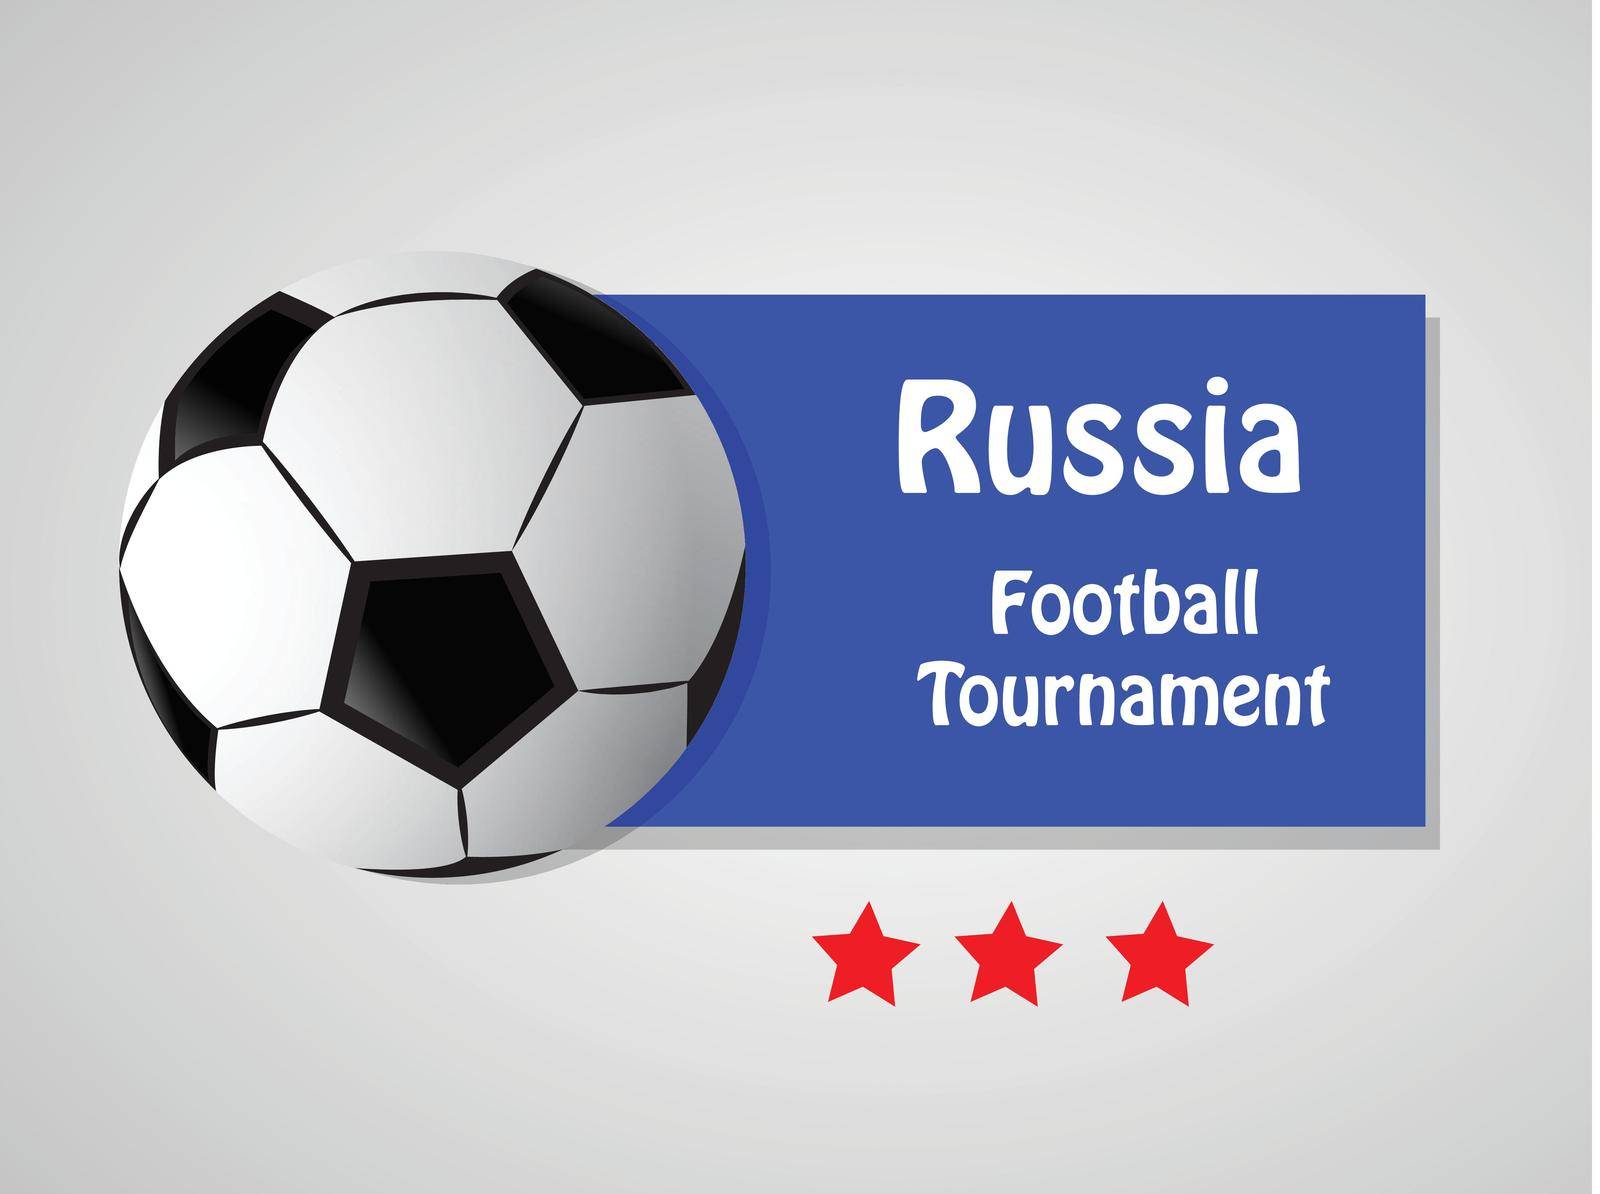 illustration of elements of Soccer sport background